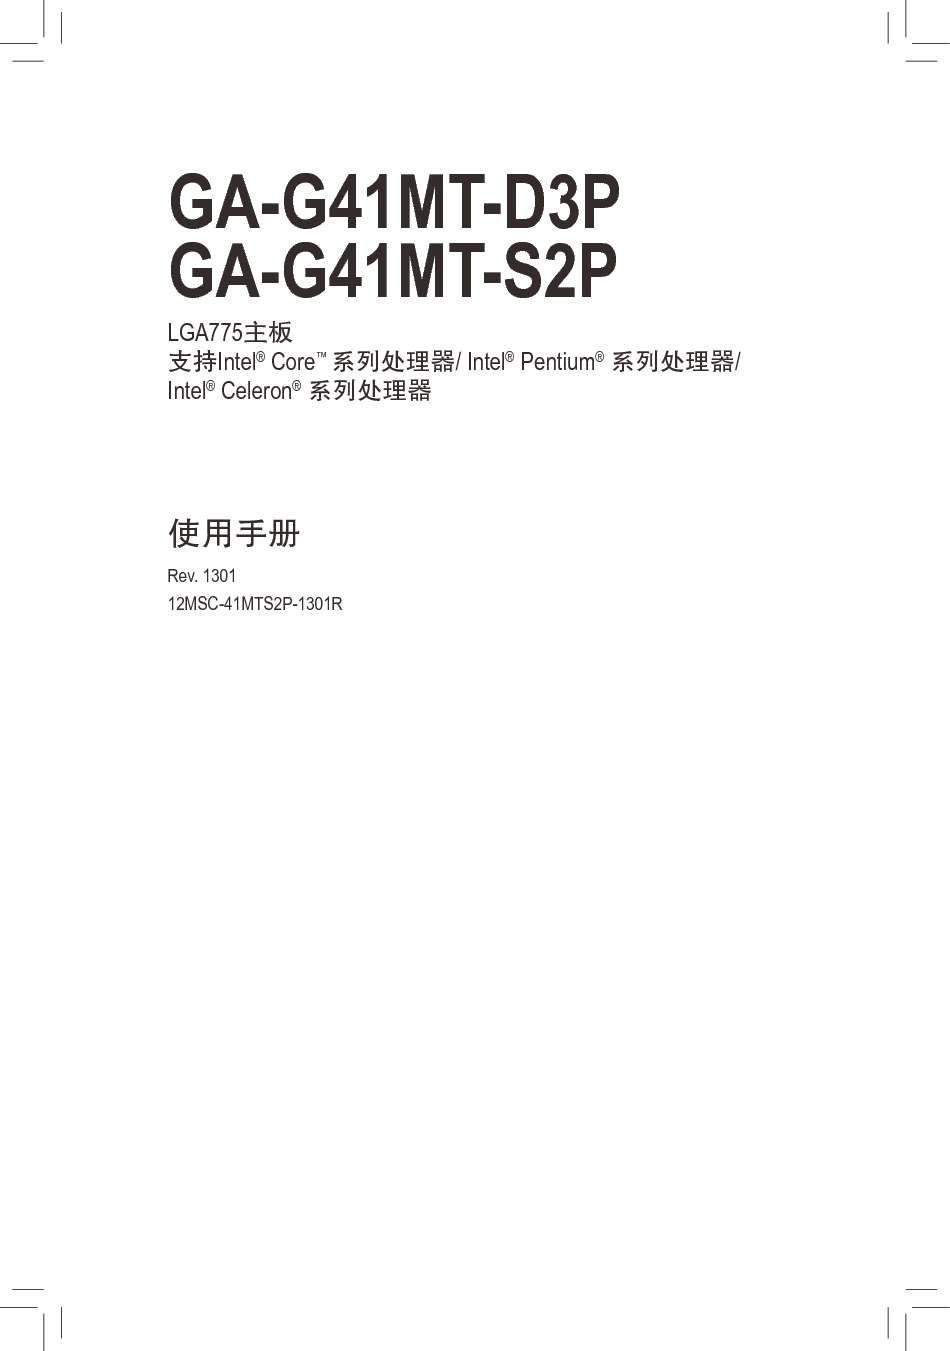 技嘉 Gigabyte GA-G41MT-D3P 使用手册 封面